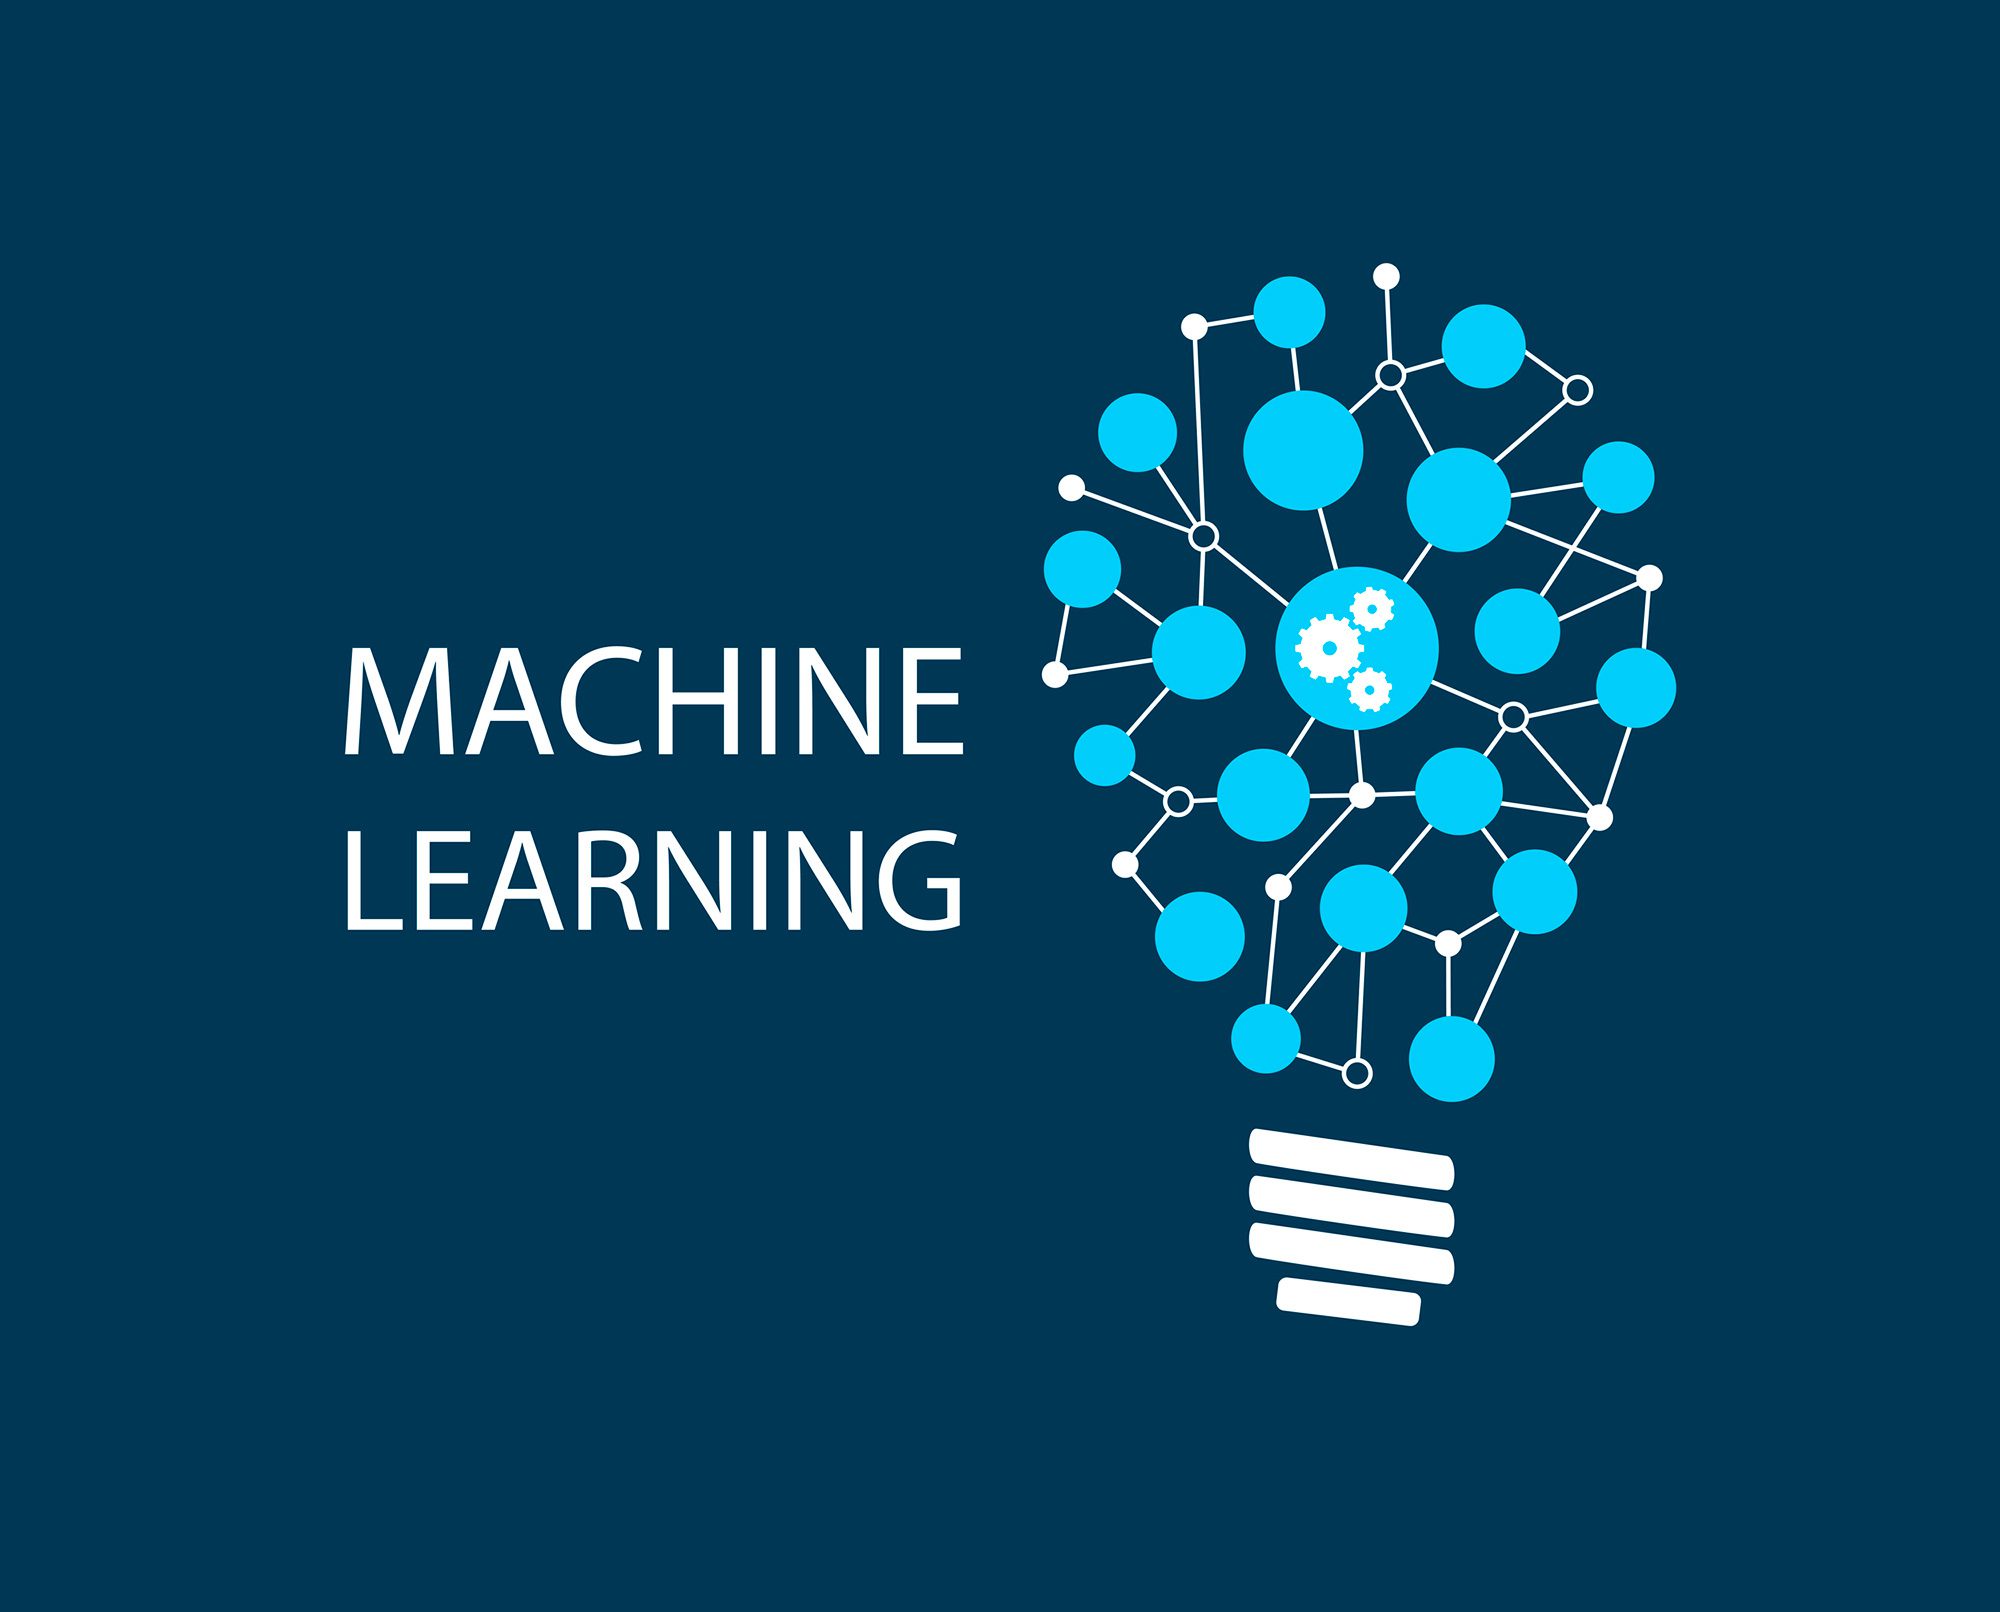 Машинное обучение. Machine Learning course. Machine Learning logo. Multi learning